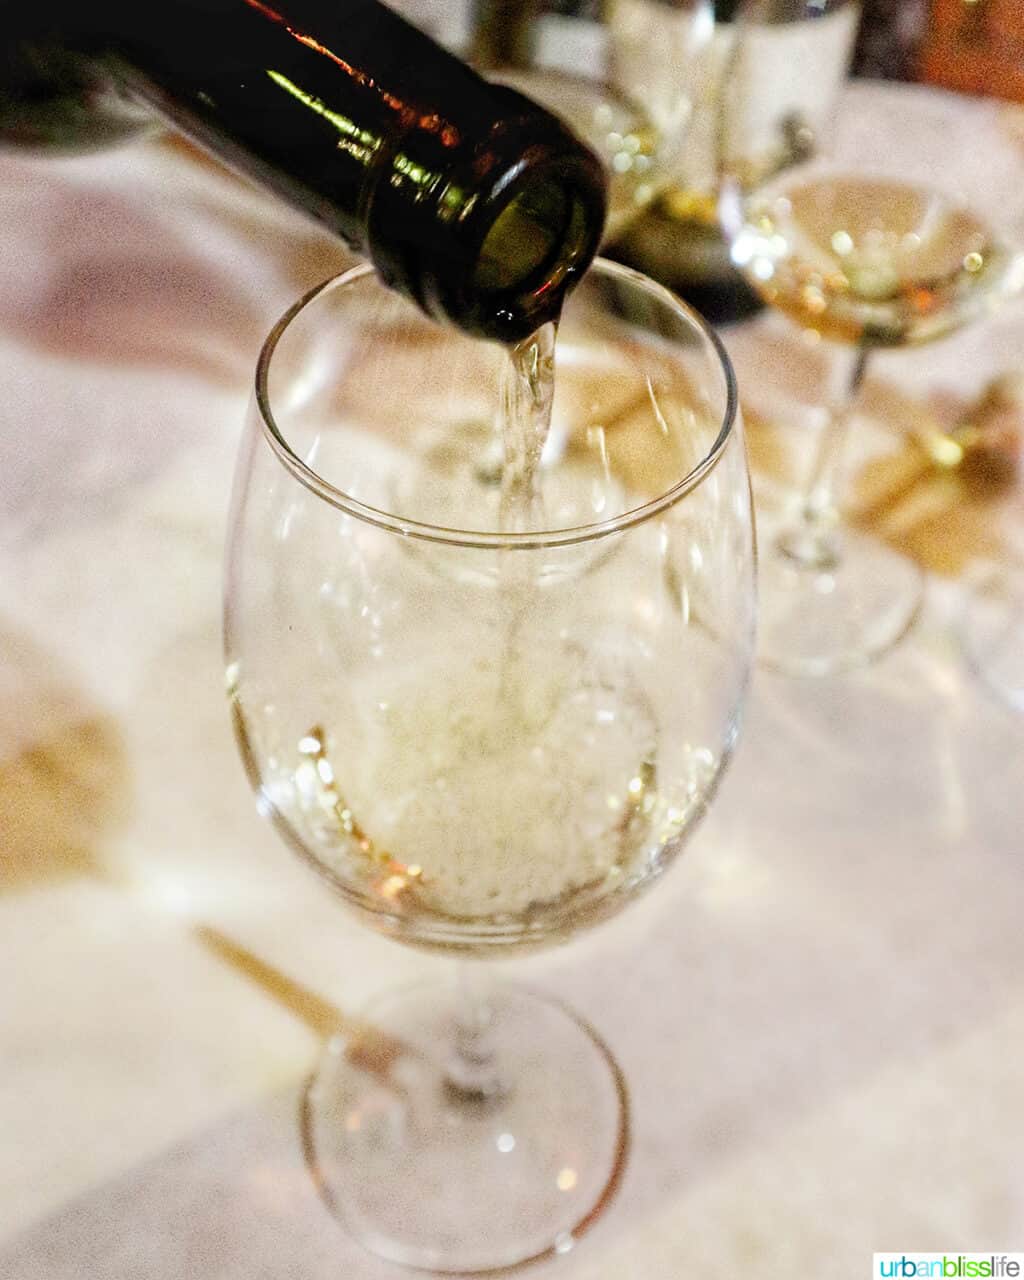 pouring a white Kazakhstan wine into a glass.